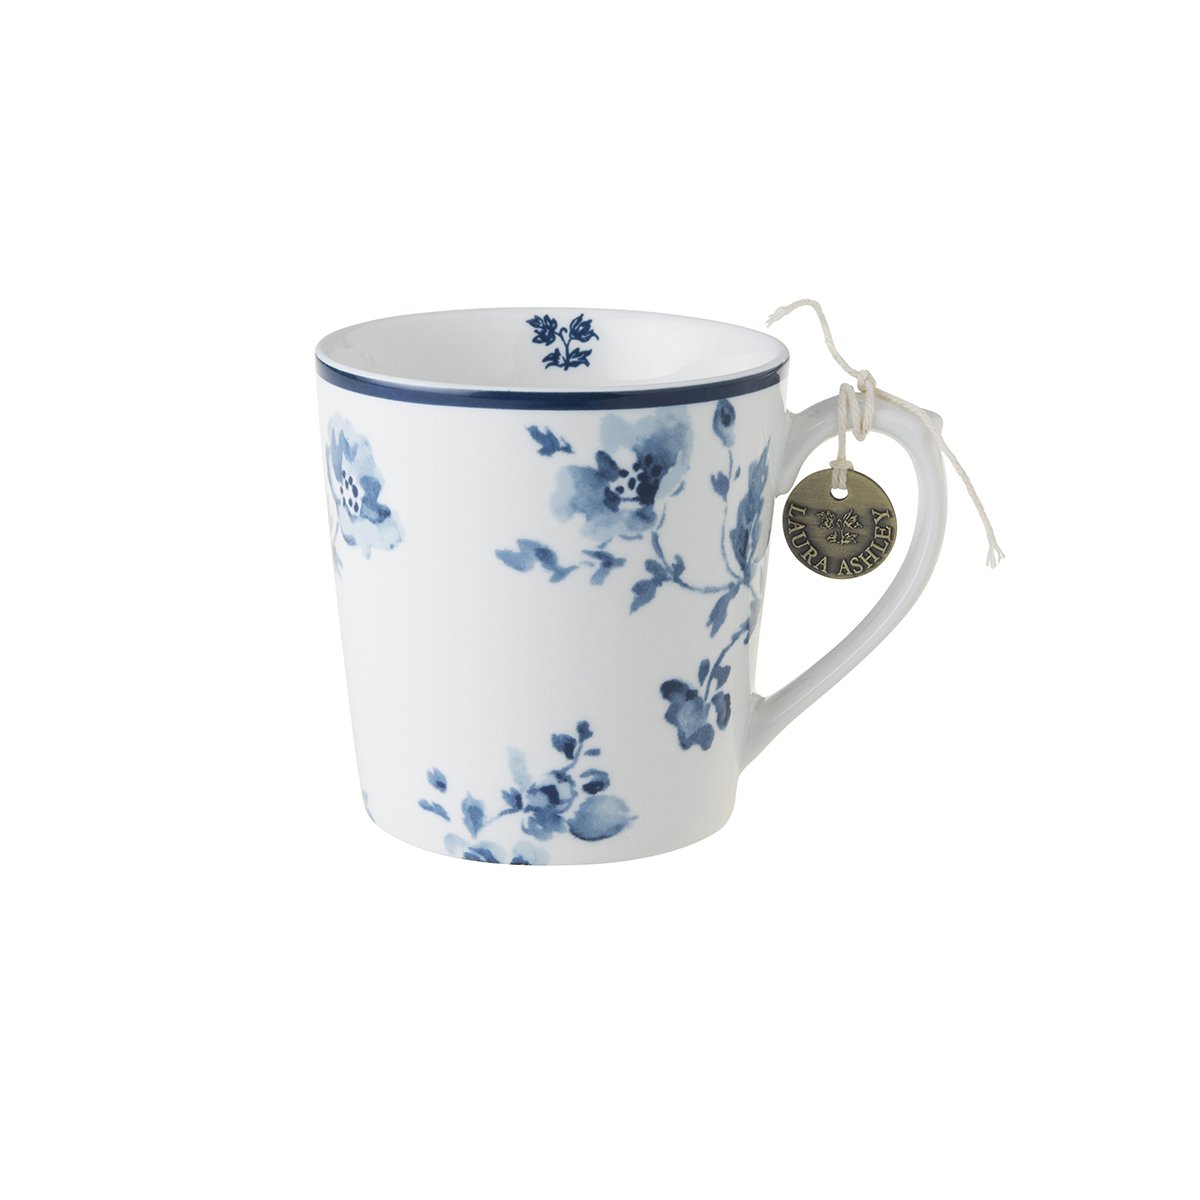 china rose; mug; blueprint collection; κούπα καφέ; laura ashley; mayestic